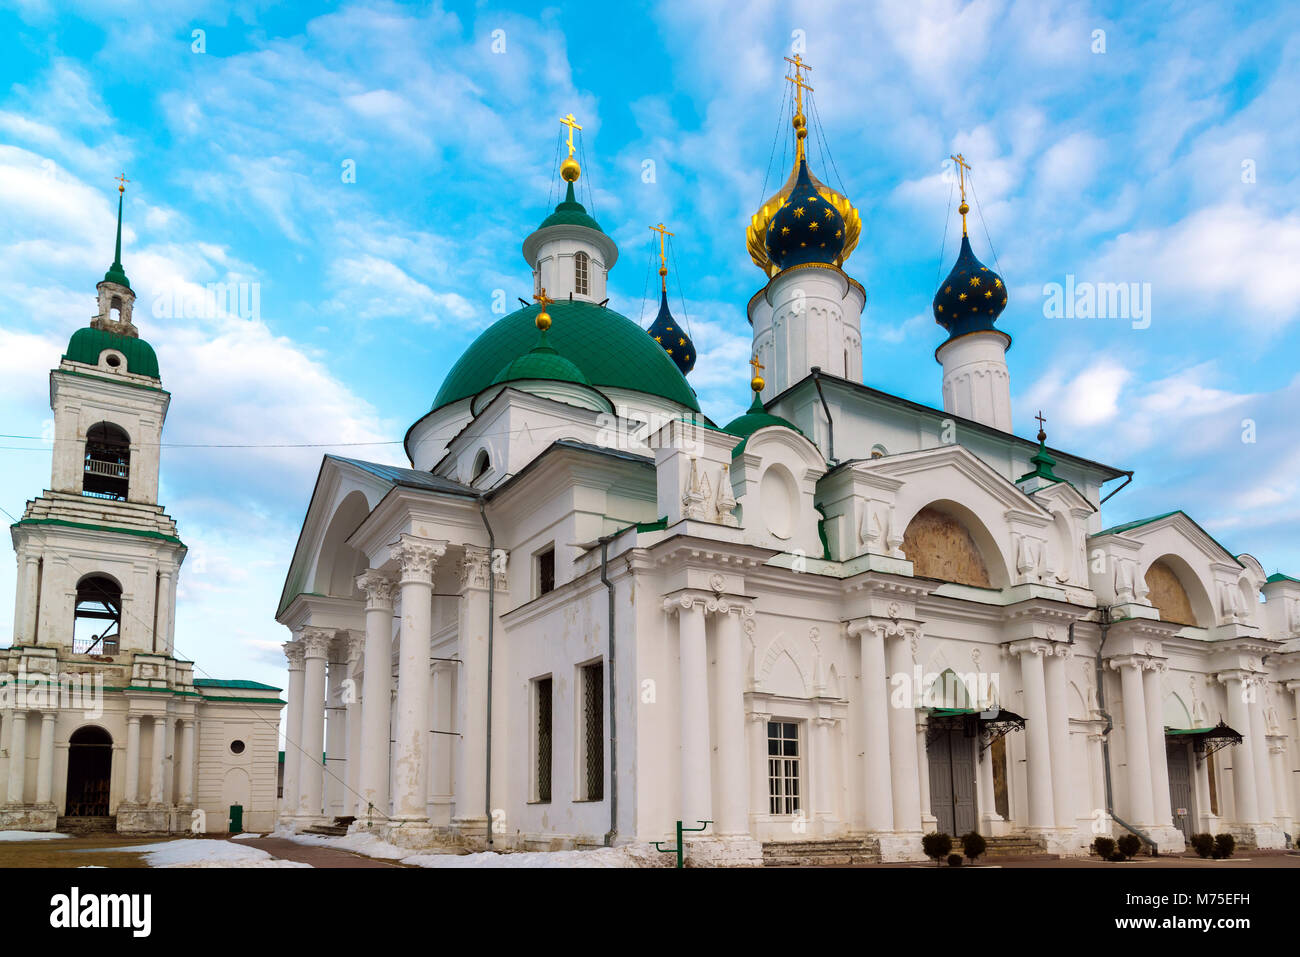 Yakovlevsky cathédrales Maison Spaso dans un monastère de Rostov Veliki, Russie Banque D'Images